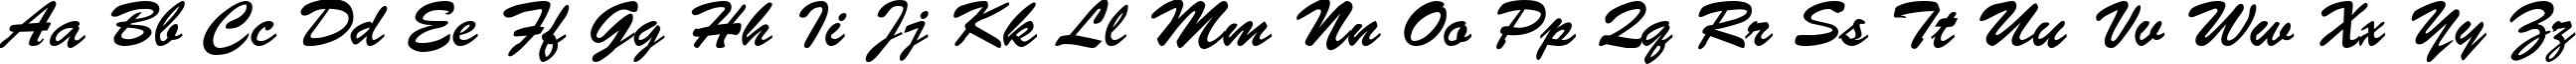 Пример написания английского алфавита шрифтом CyrillicBrush Medium